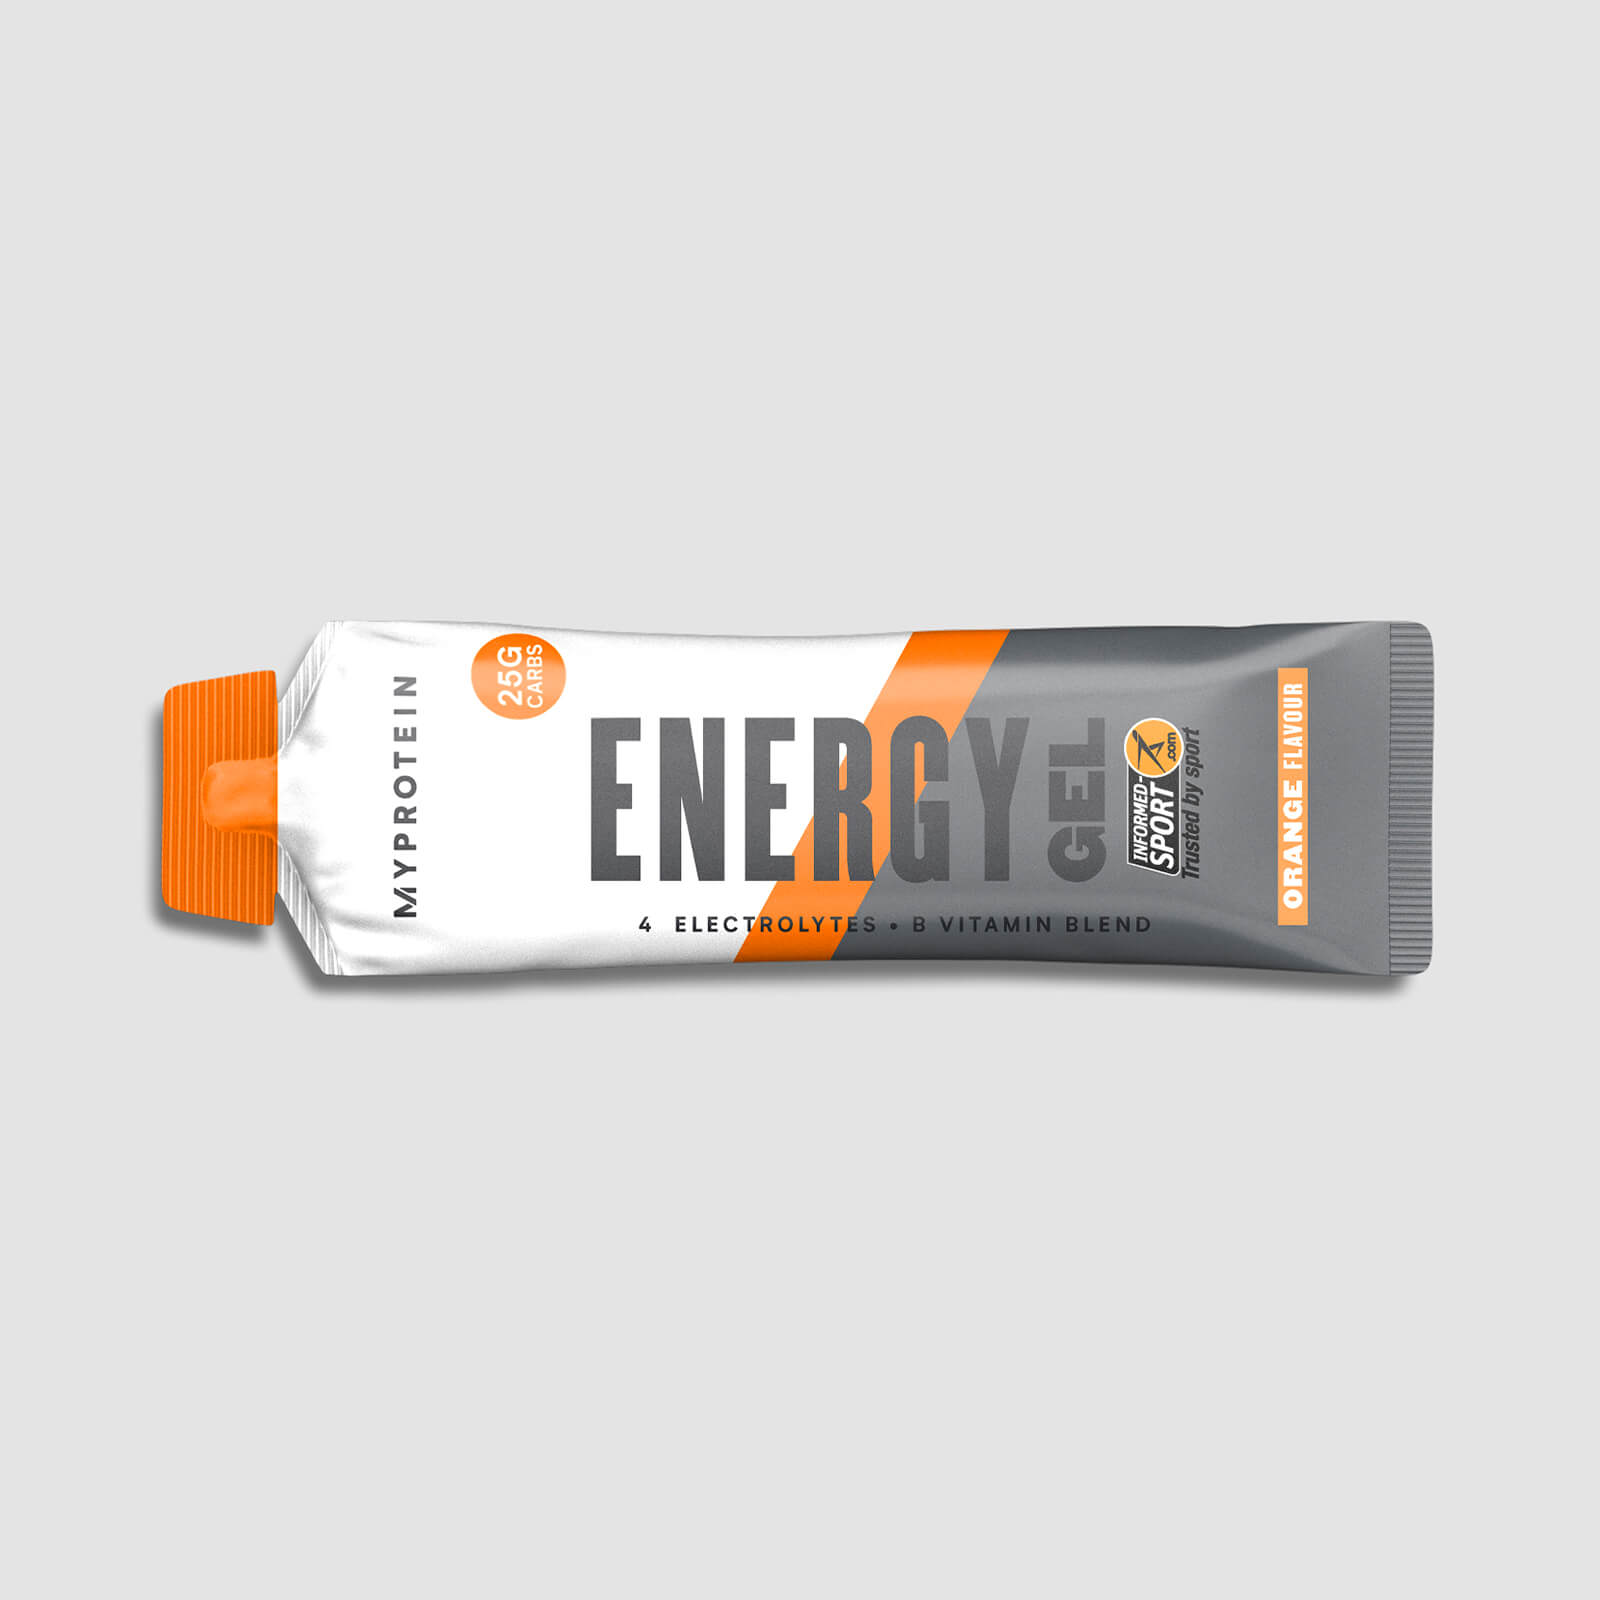 Myprotein Energy Elite, 50g - 50g - Orange